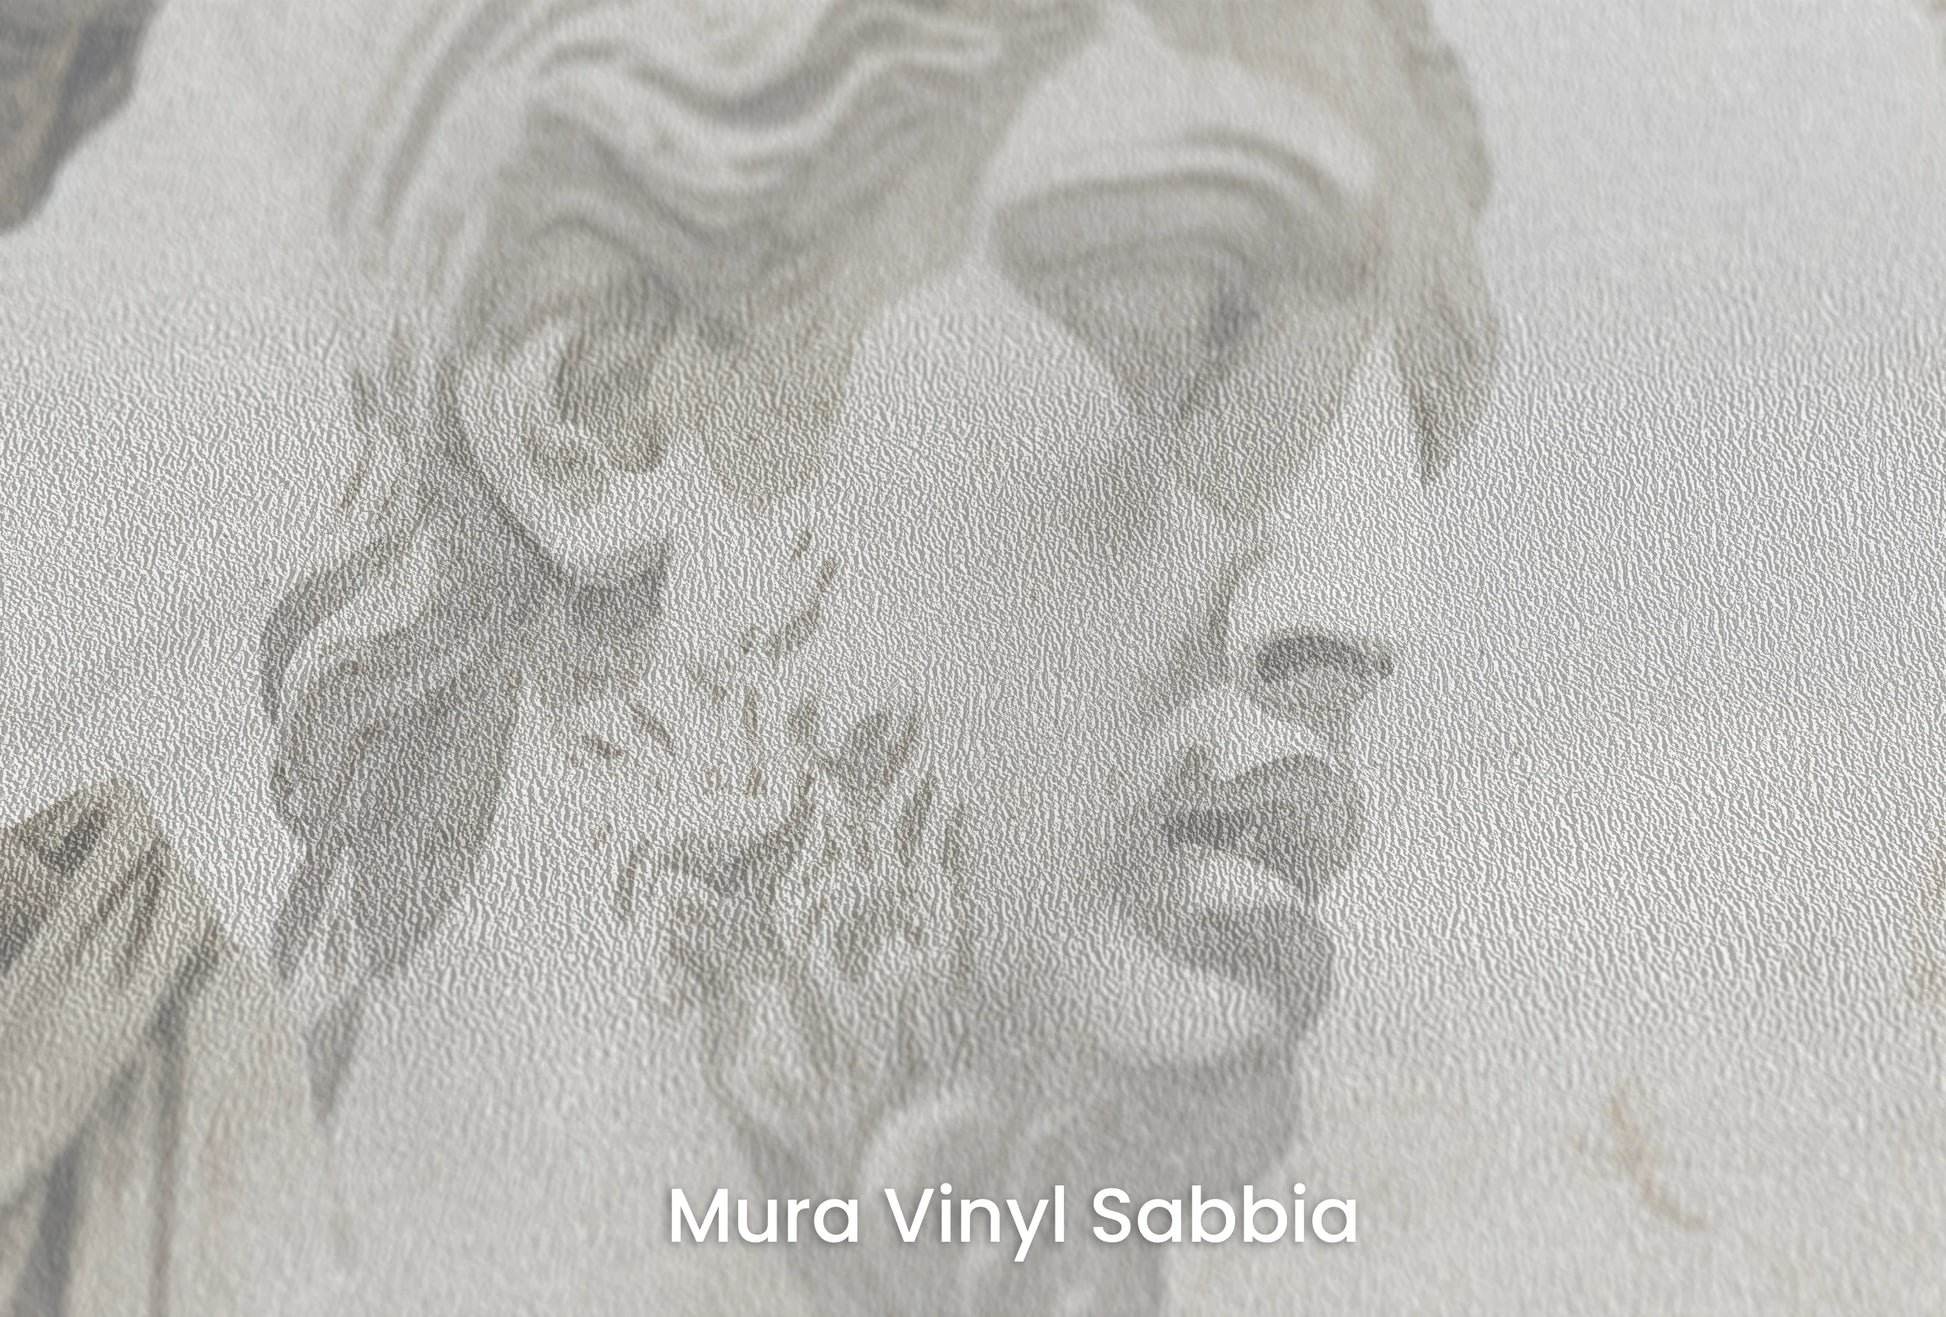 Zbliżenie na artystyczną fototapetę o nazwie Apollo's Contemplation na podłożu Mura Vinyl Sabbia struktura grubego ziarna piasku.